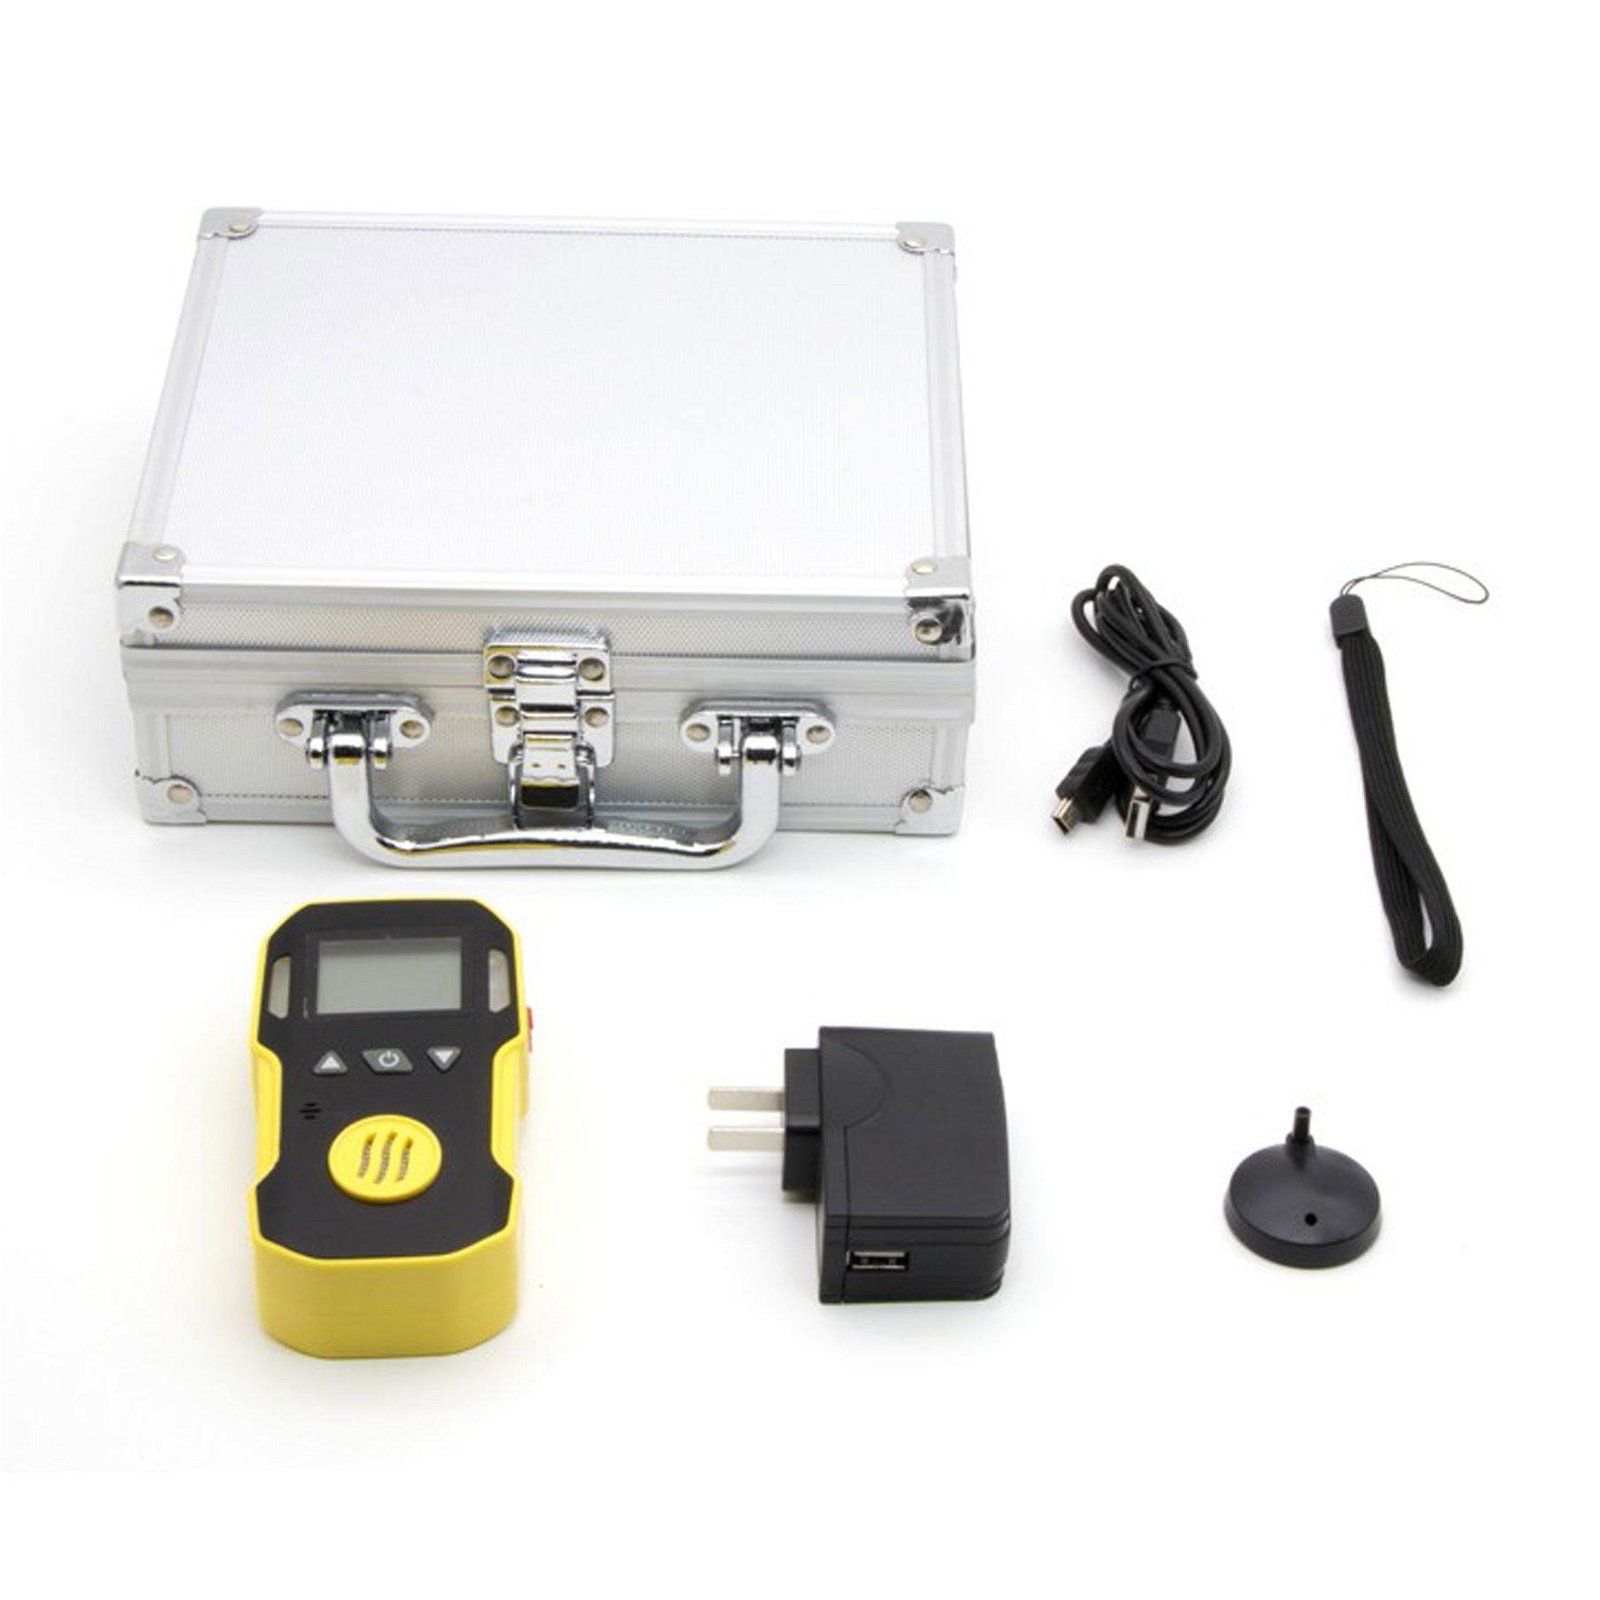 NO2 Gas Detector Meter Professional Nitrogen Dioxide Detector Tester 0-20ppm 5